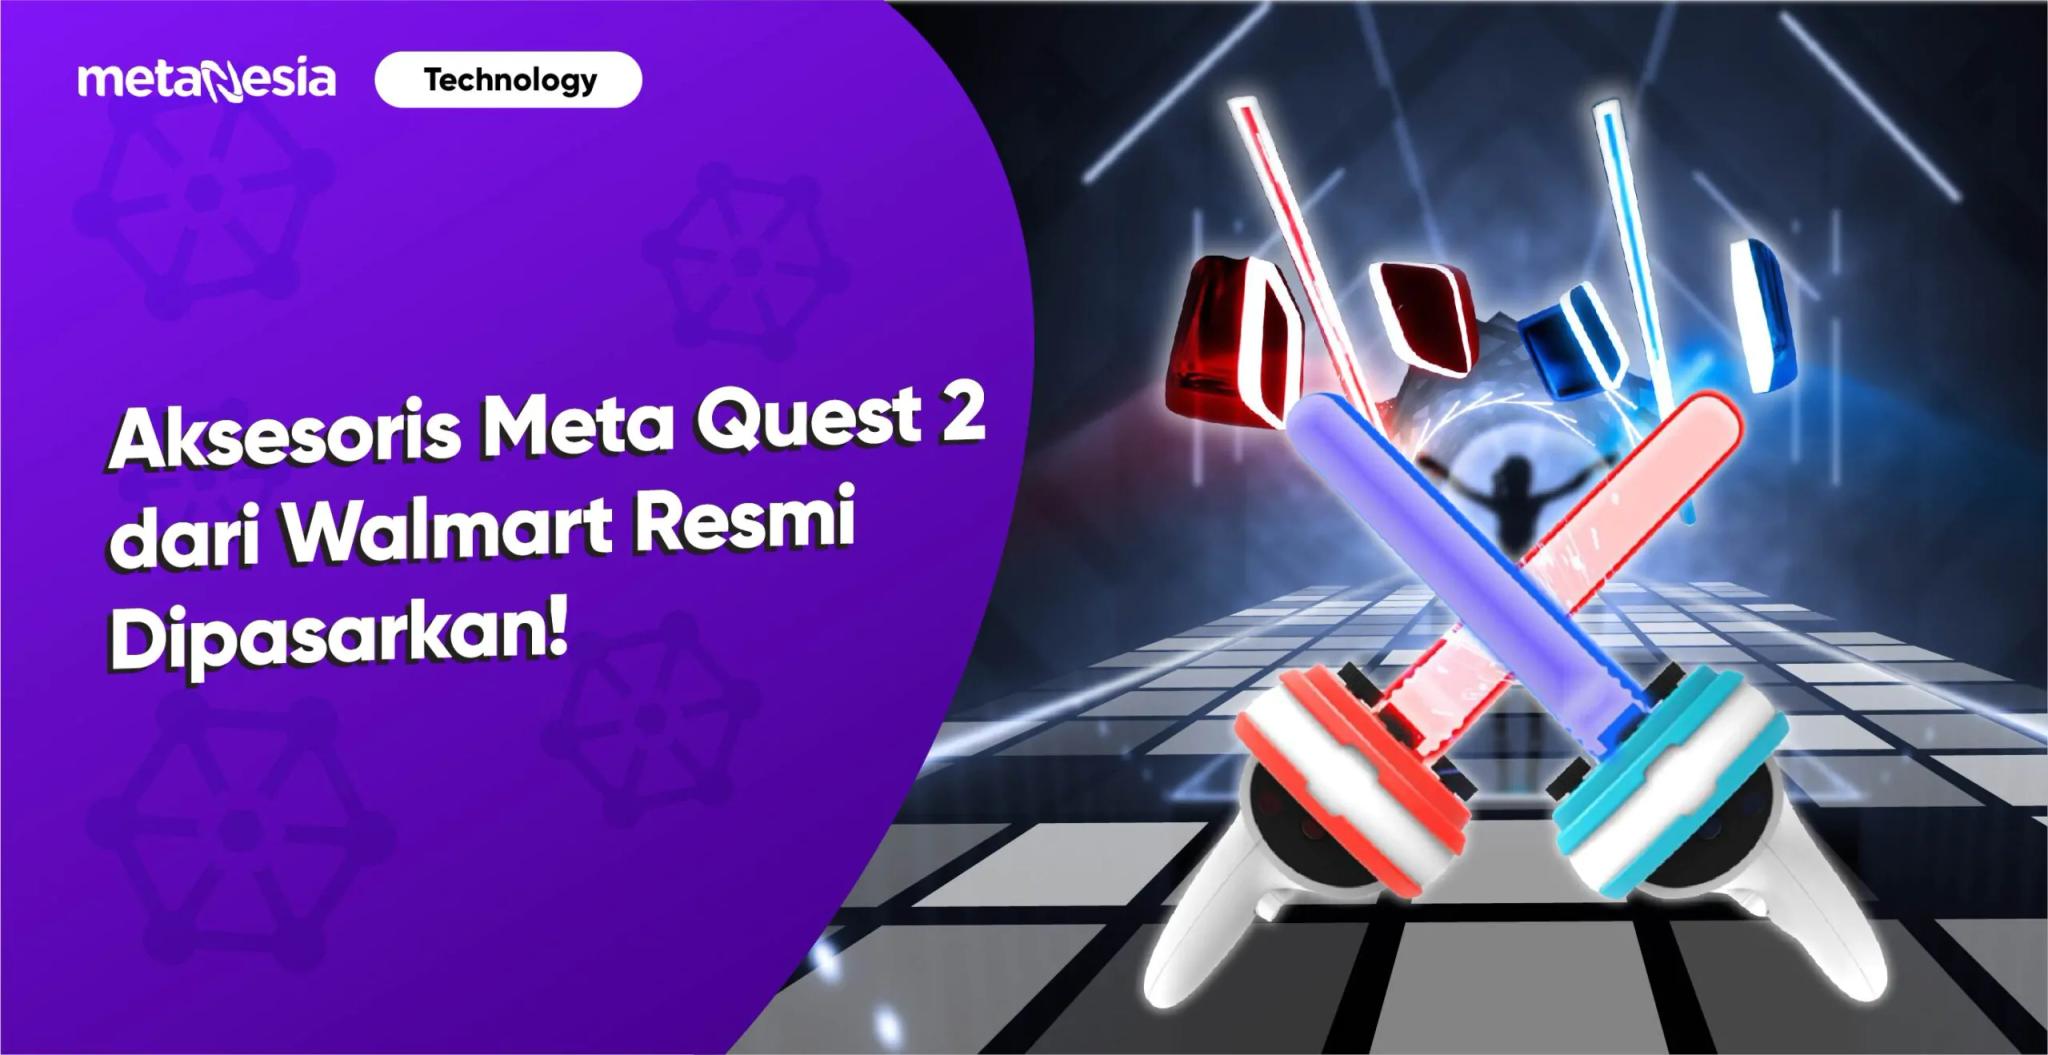 Aksesori Meta Quest 2 dari Walmart Resmi Dipasarkan!